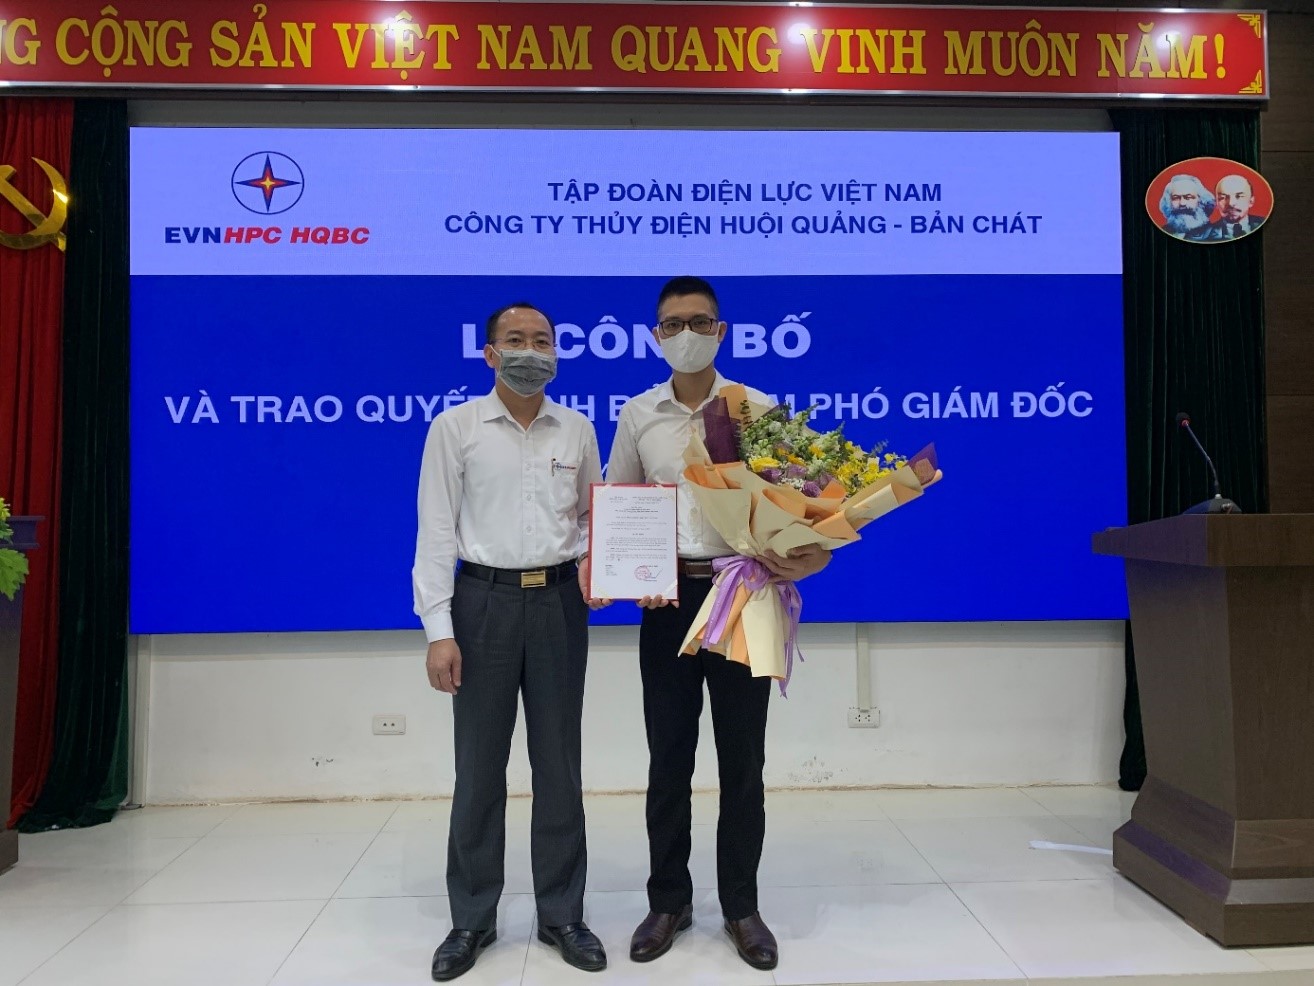 Lễ công bố và trao Quyết định bổ nhiệm Phó Giám đốc Công ty Thủy điện Huội Quảng - Bản Chát